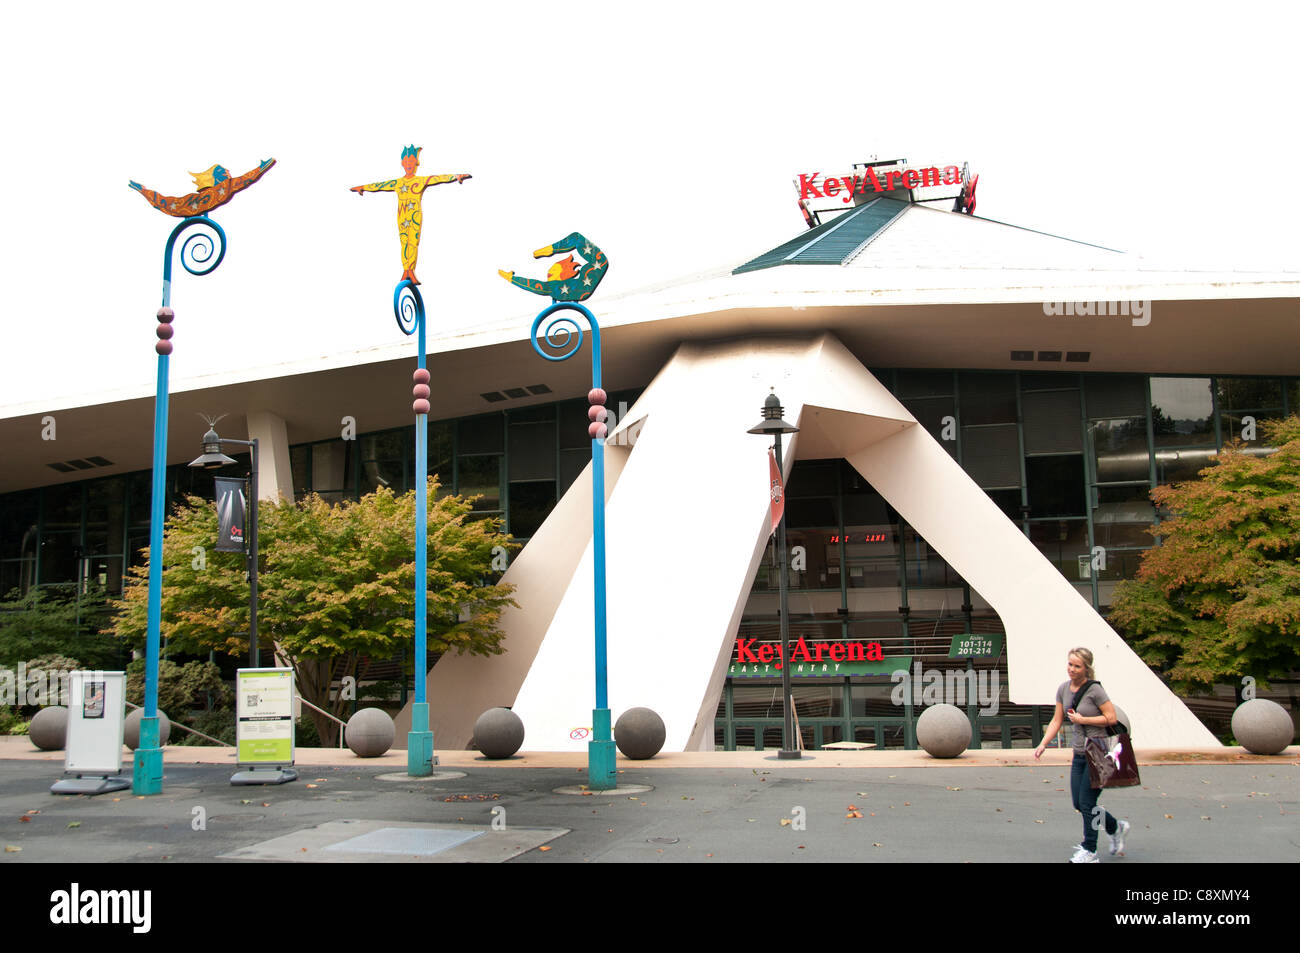 Key Arena Seattle Town City Washington State United States Stock Photo